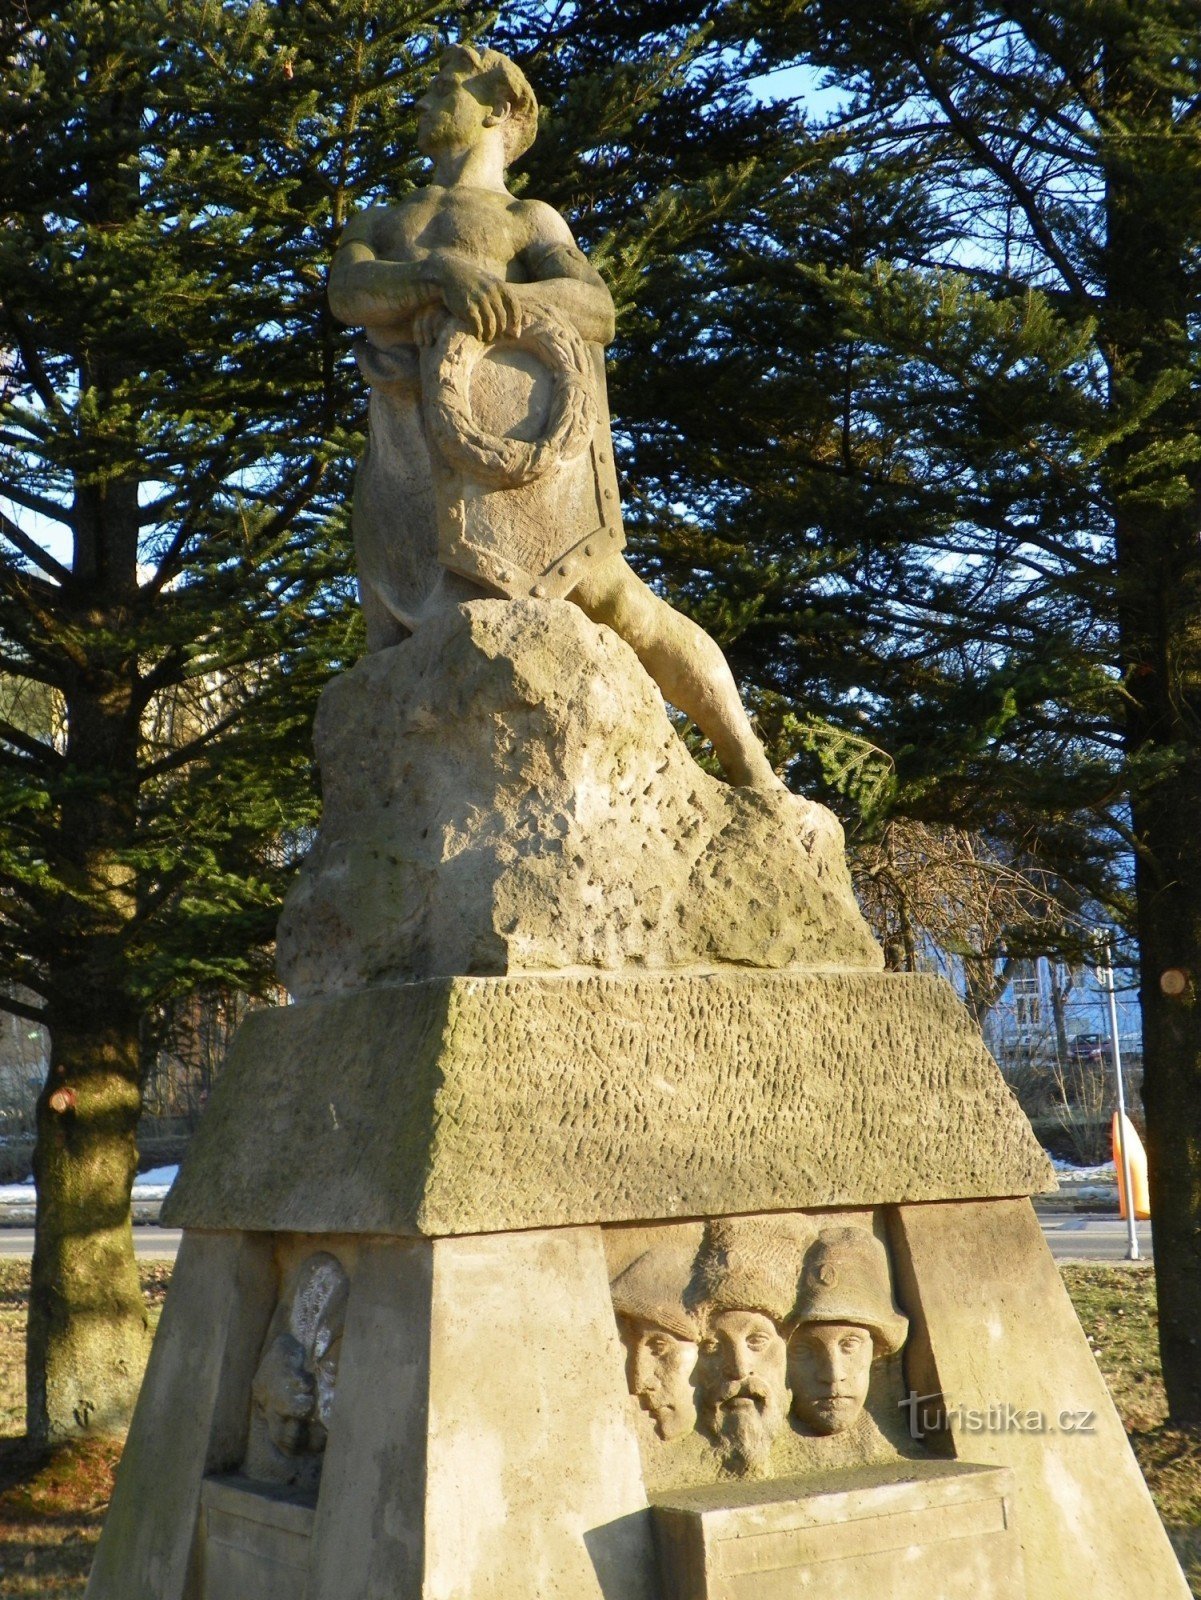 Detalhe da estátua do monumento